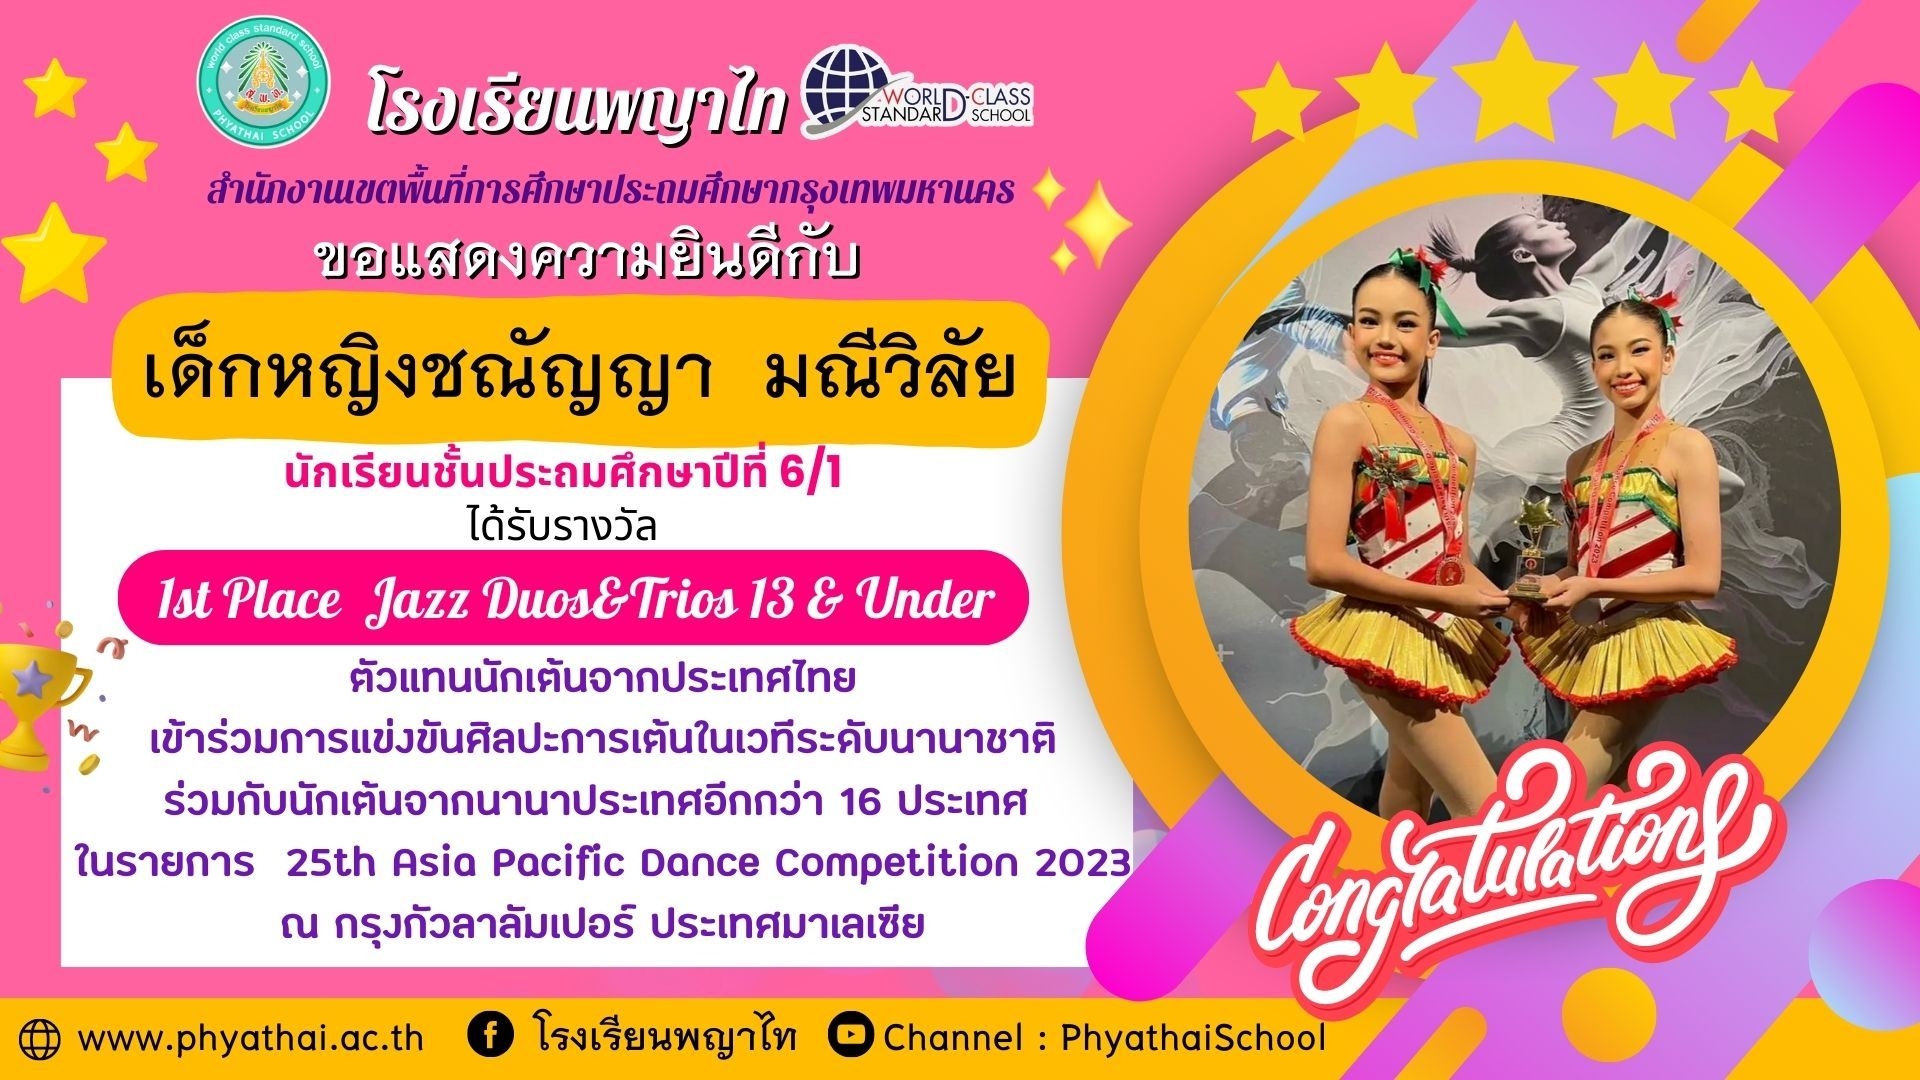 เด็กหญิงชณัญญา มณีวิลัย ตัวแทนแข่งขันรายการ 25th Asia Pacific Dance Competition 2023